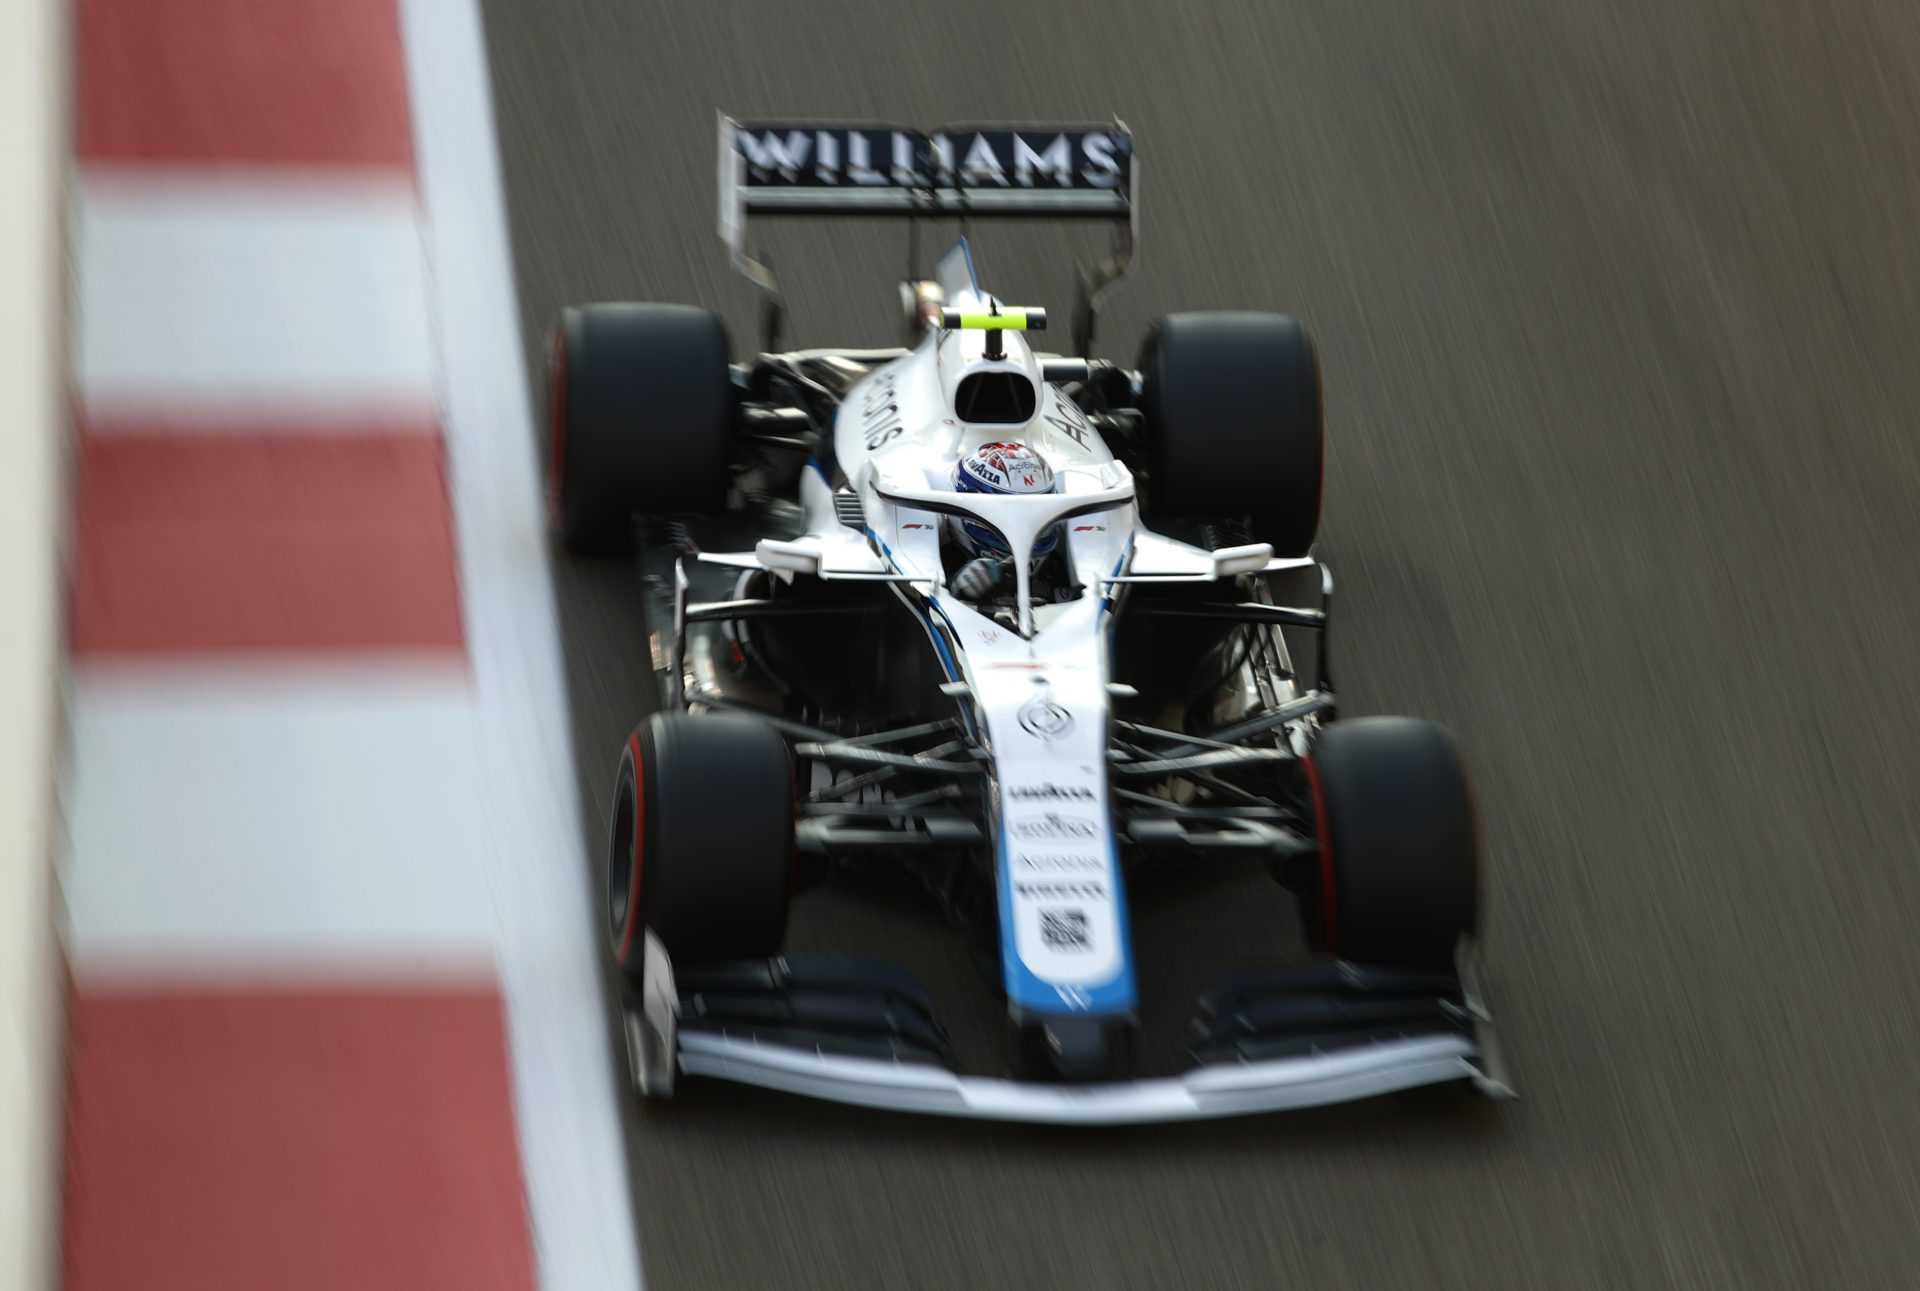 `` Aucun de nous n'aime être 10e du championnat '': Williams révèle le plan `` Horizon 10 ans '' pour le redressement de la F1